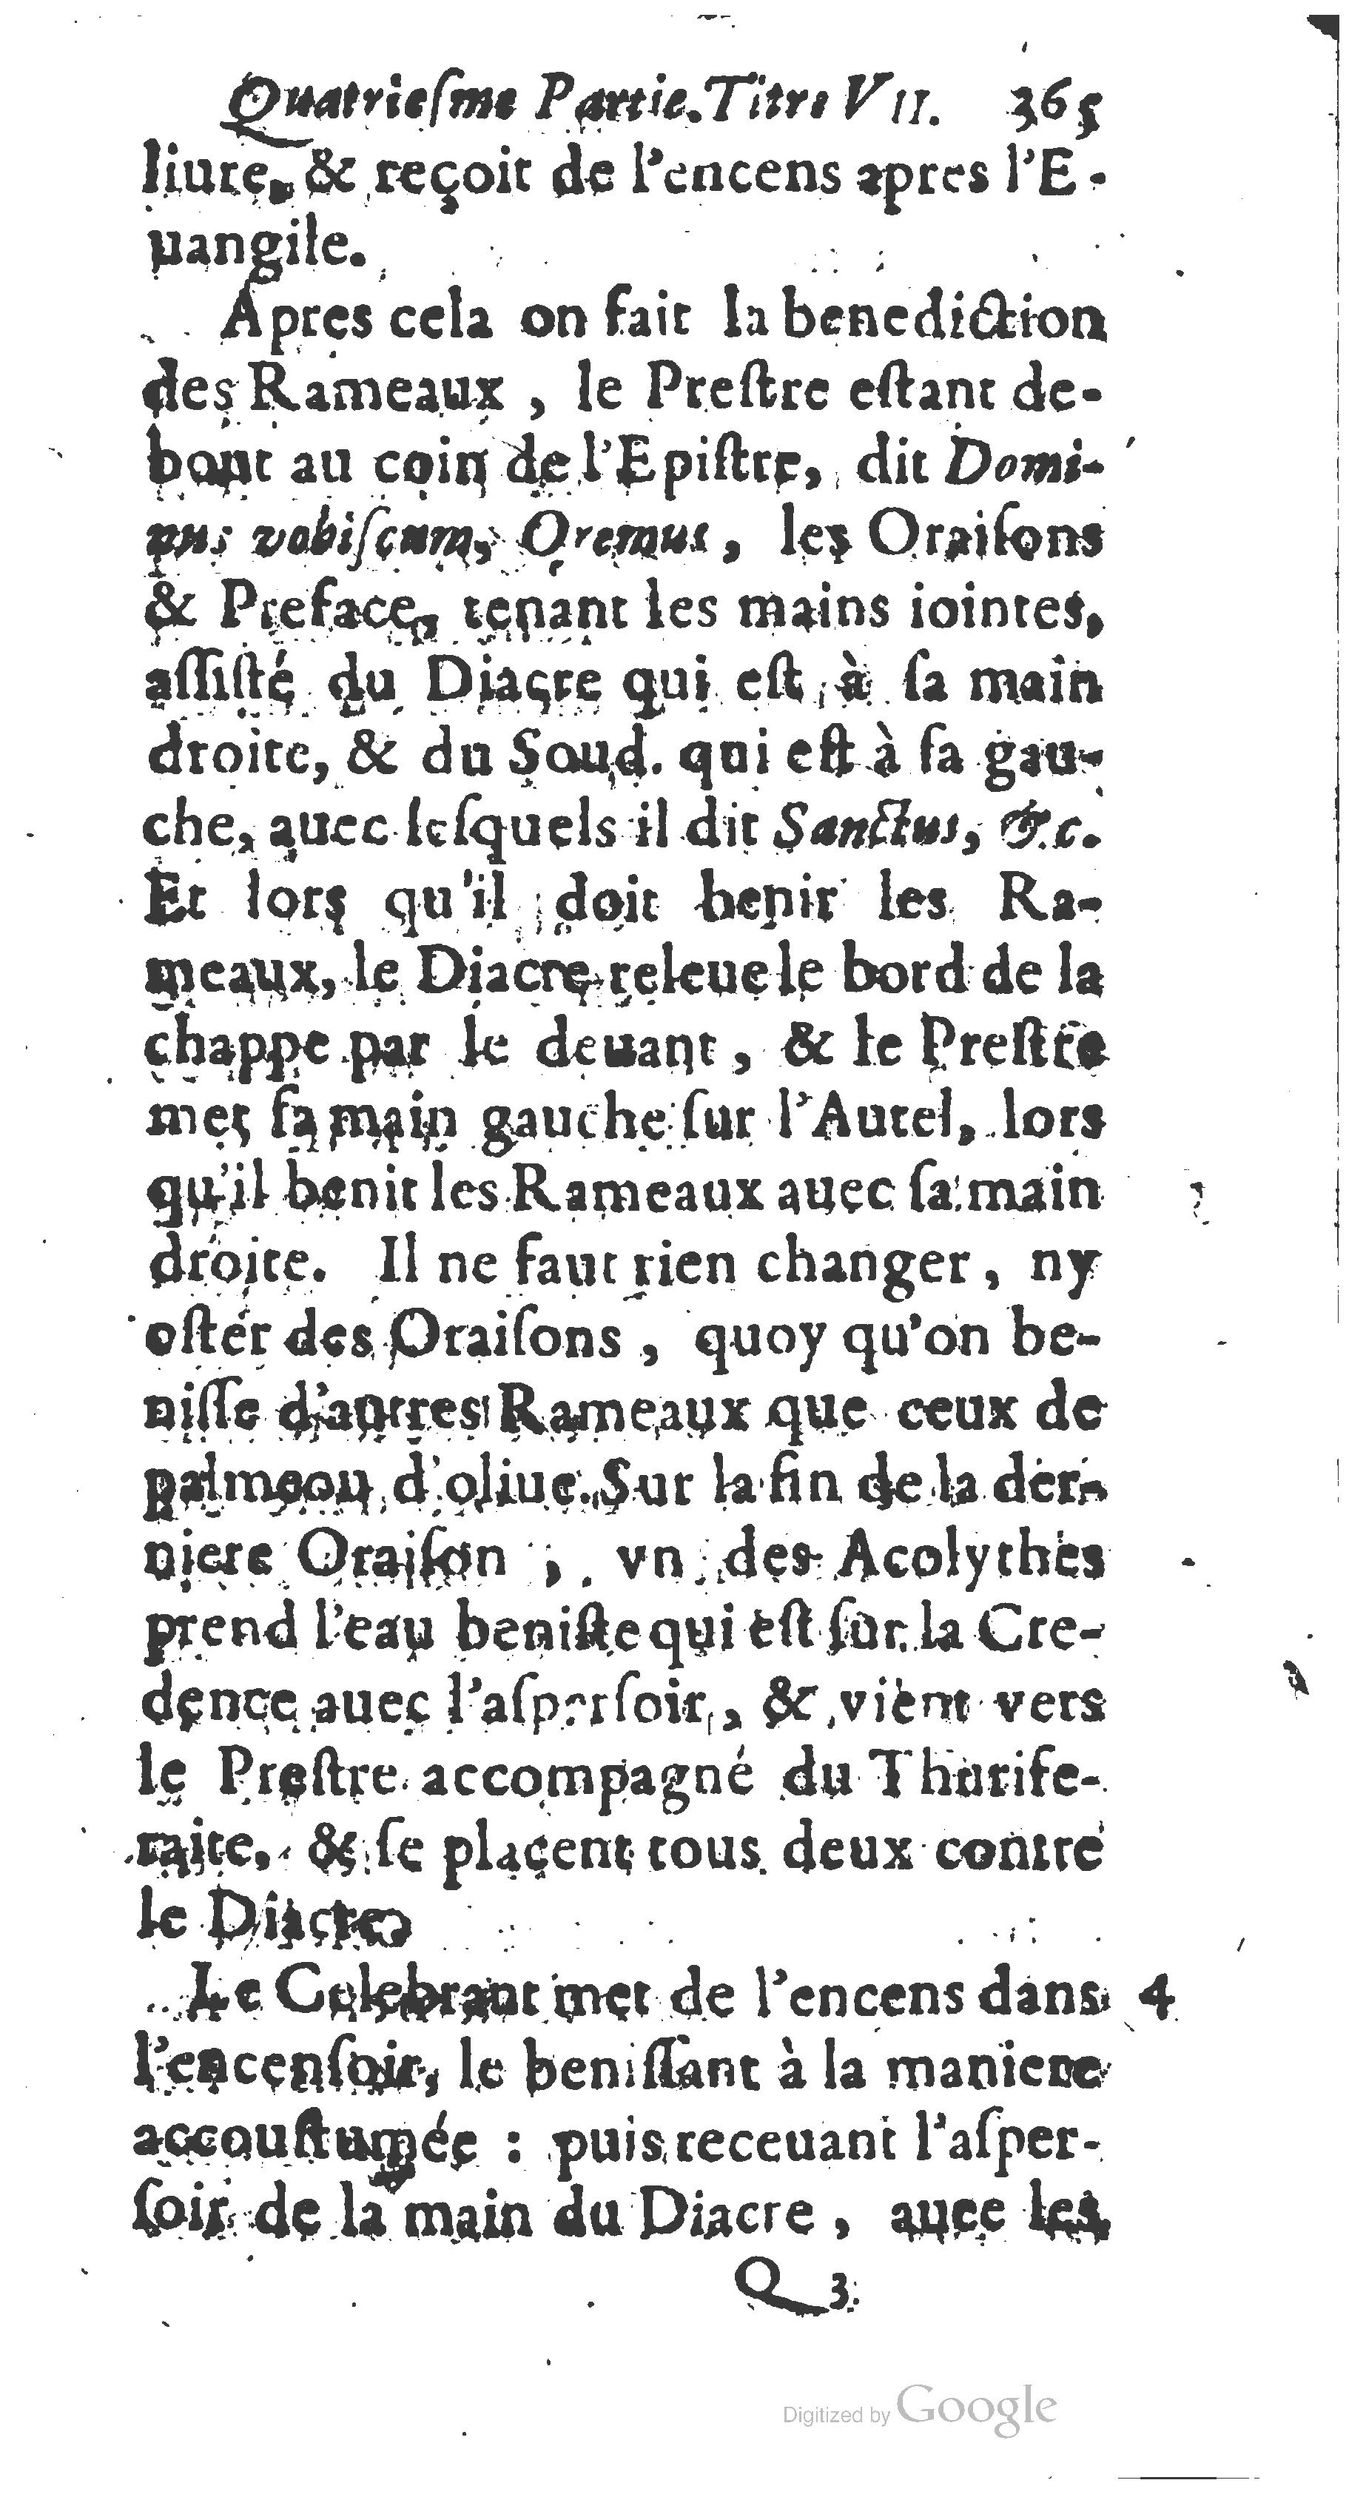 1651 Abrégé du trésor des cérémonies ecclésiastiques Guillermet_BM Lyon_Page_384.jpg